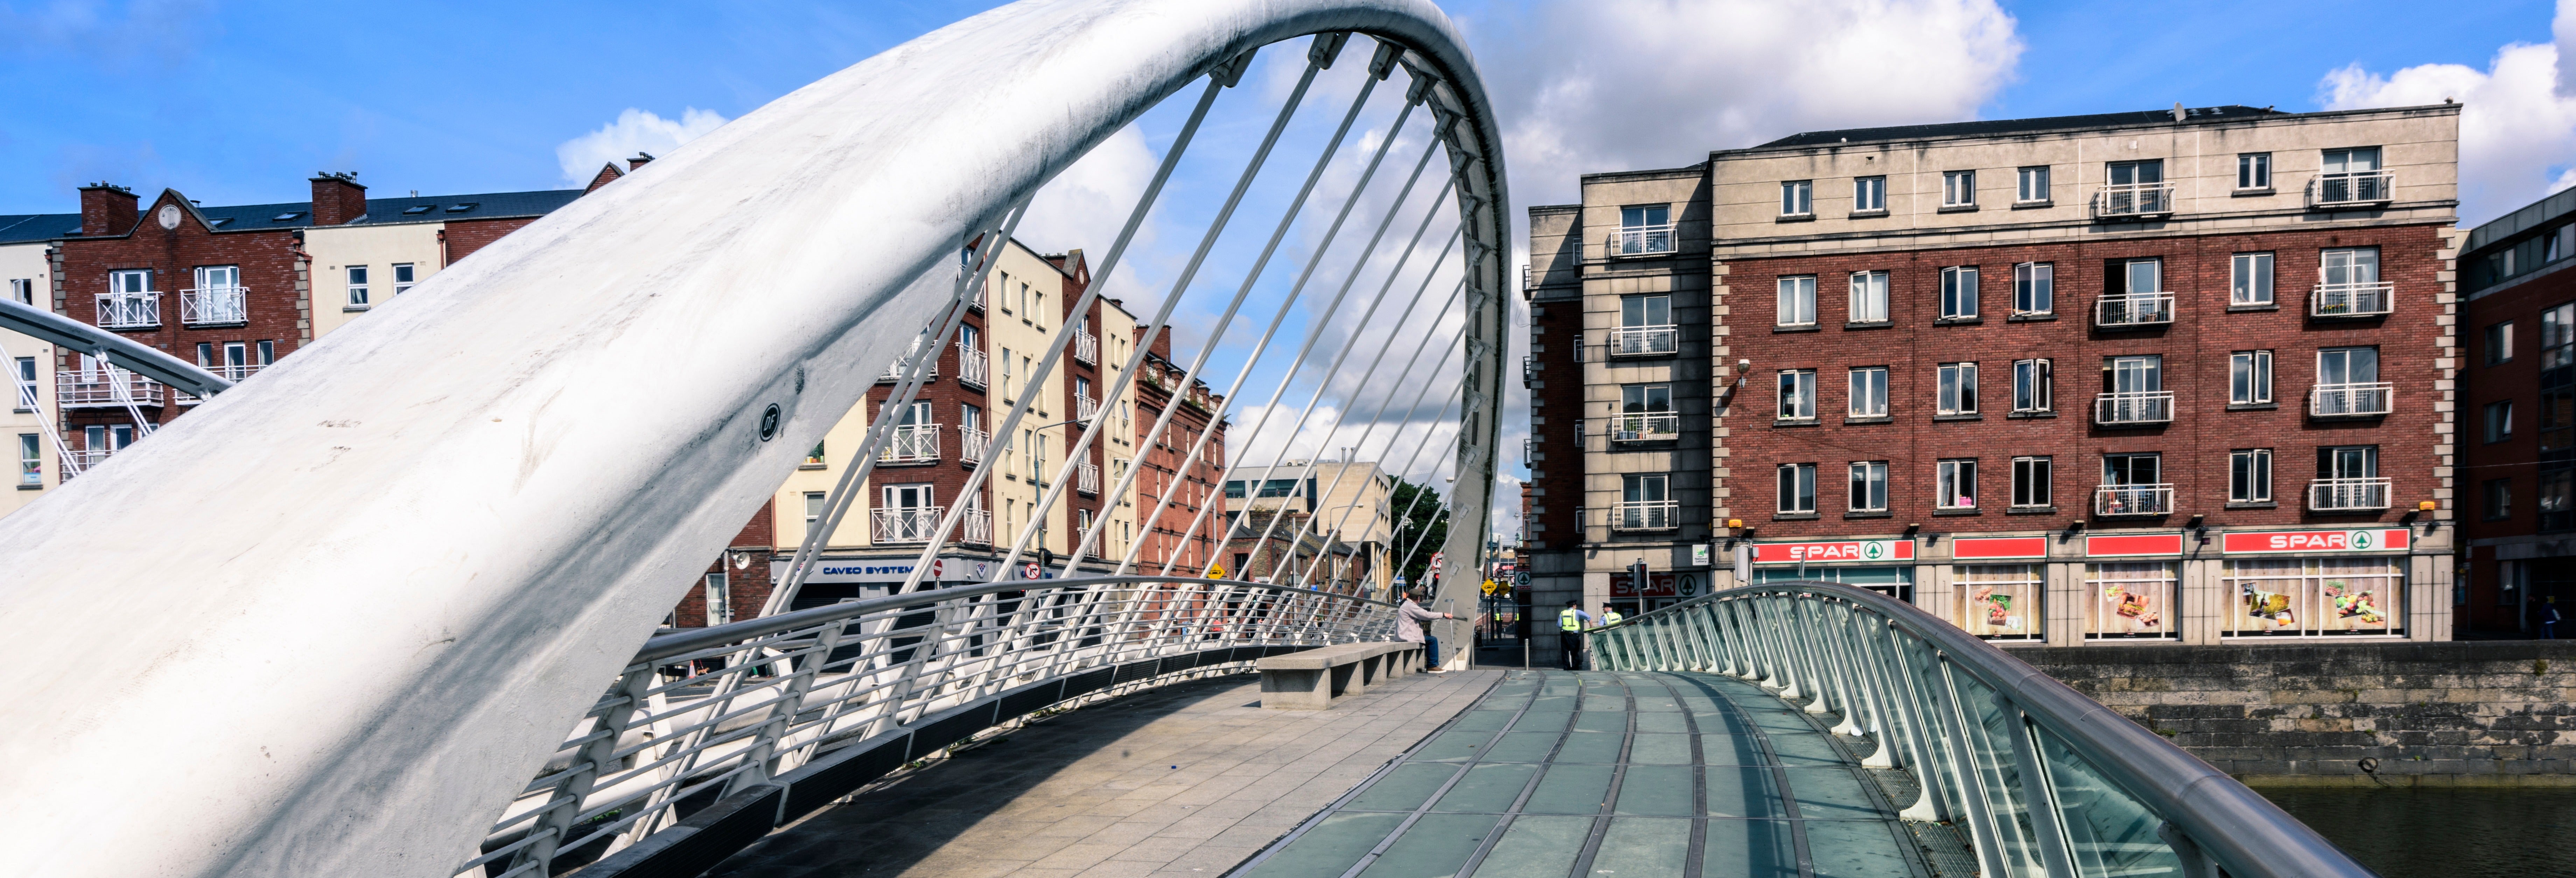 Tour of Dublin's Bridges